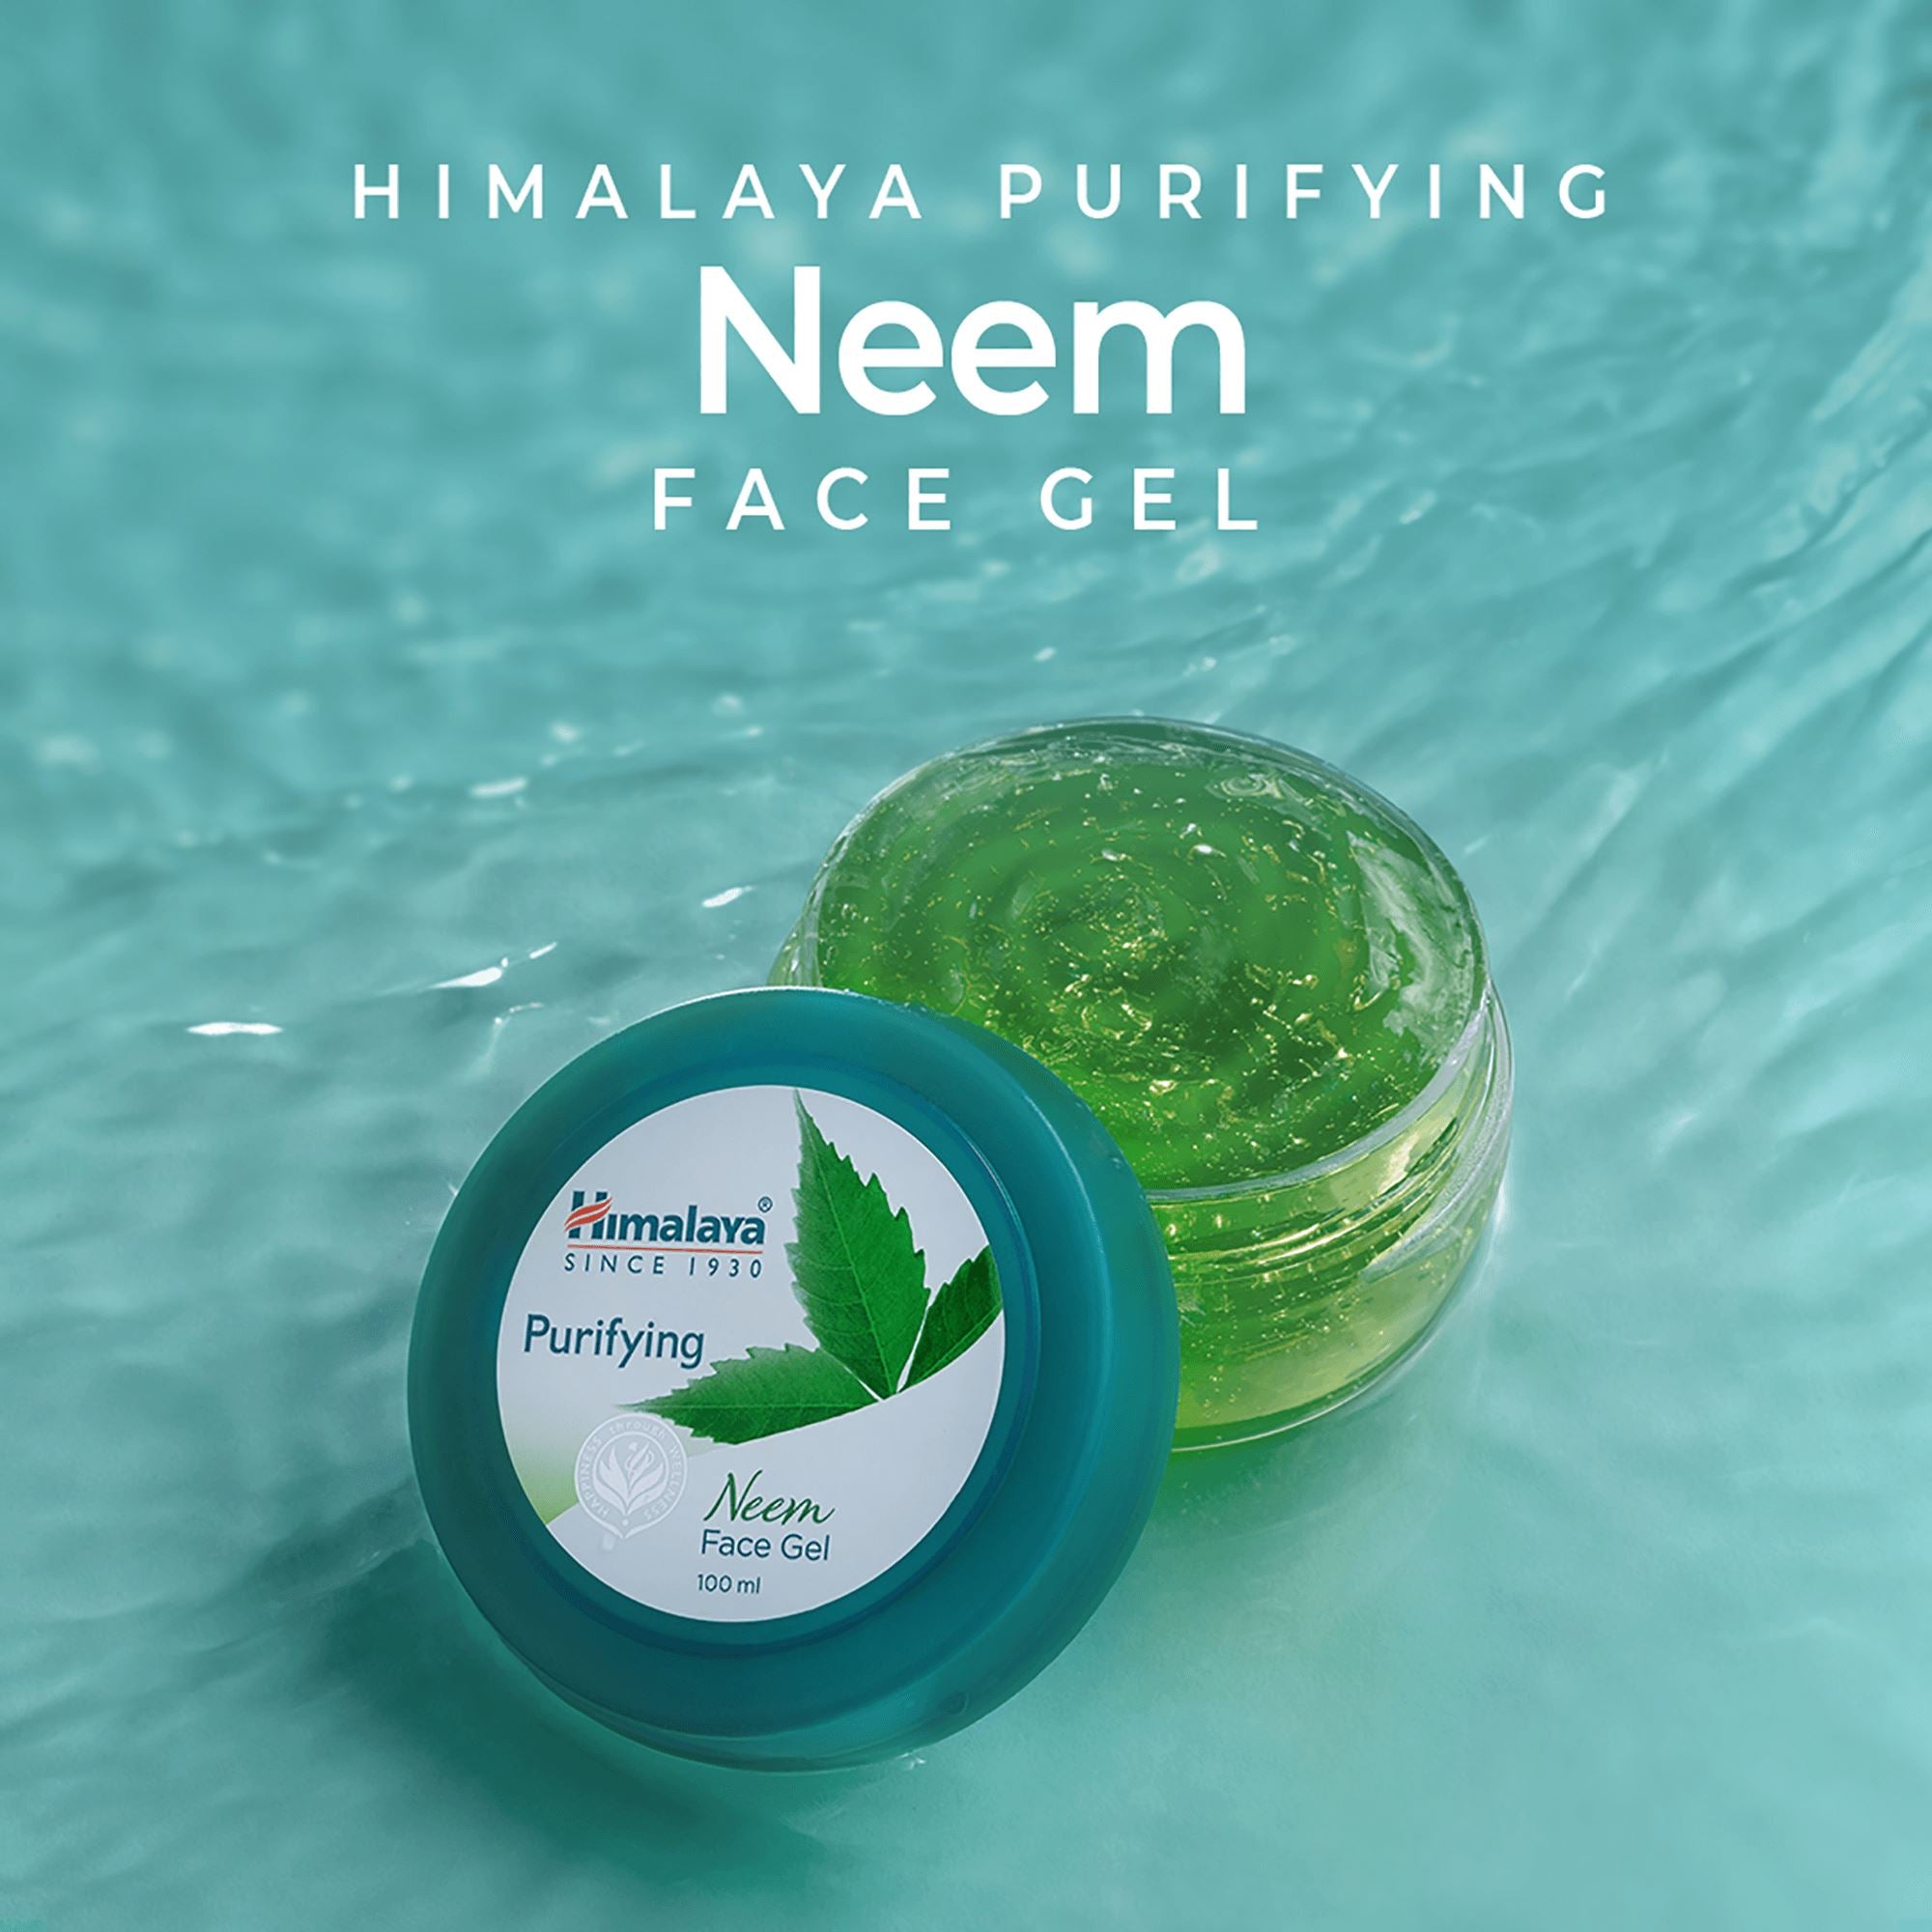 Himalaya Purifying Neem Face Gel - Purifying Neem